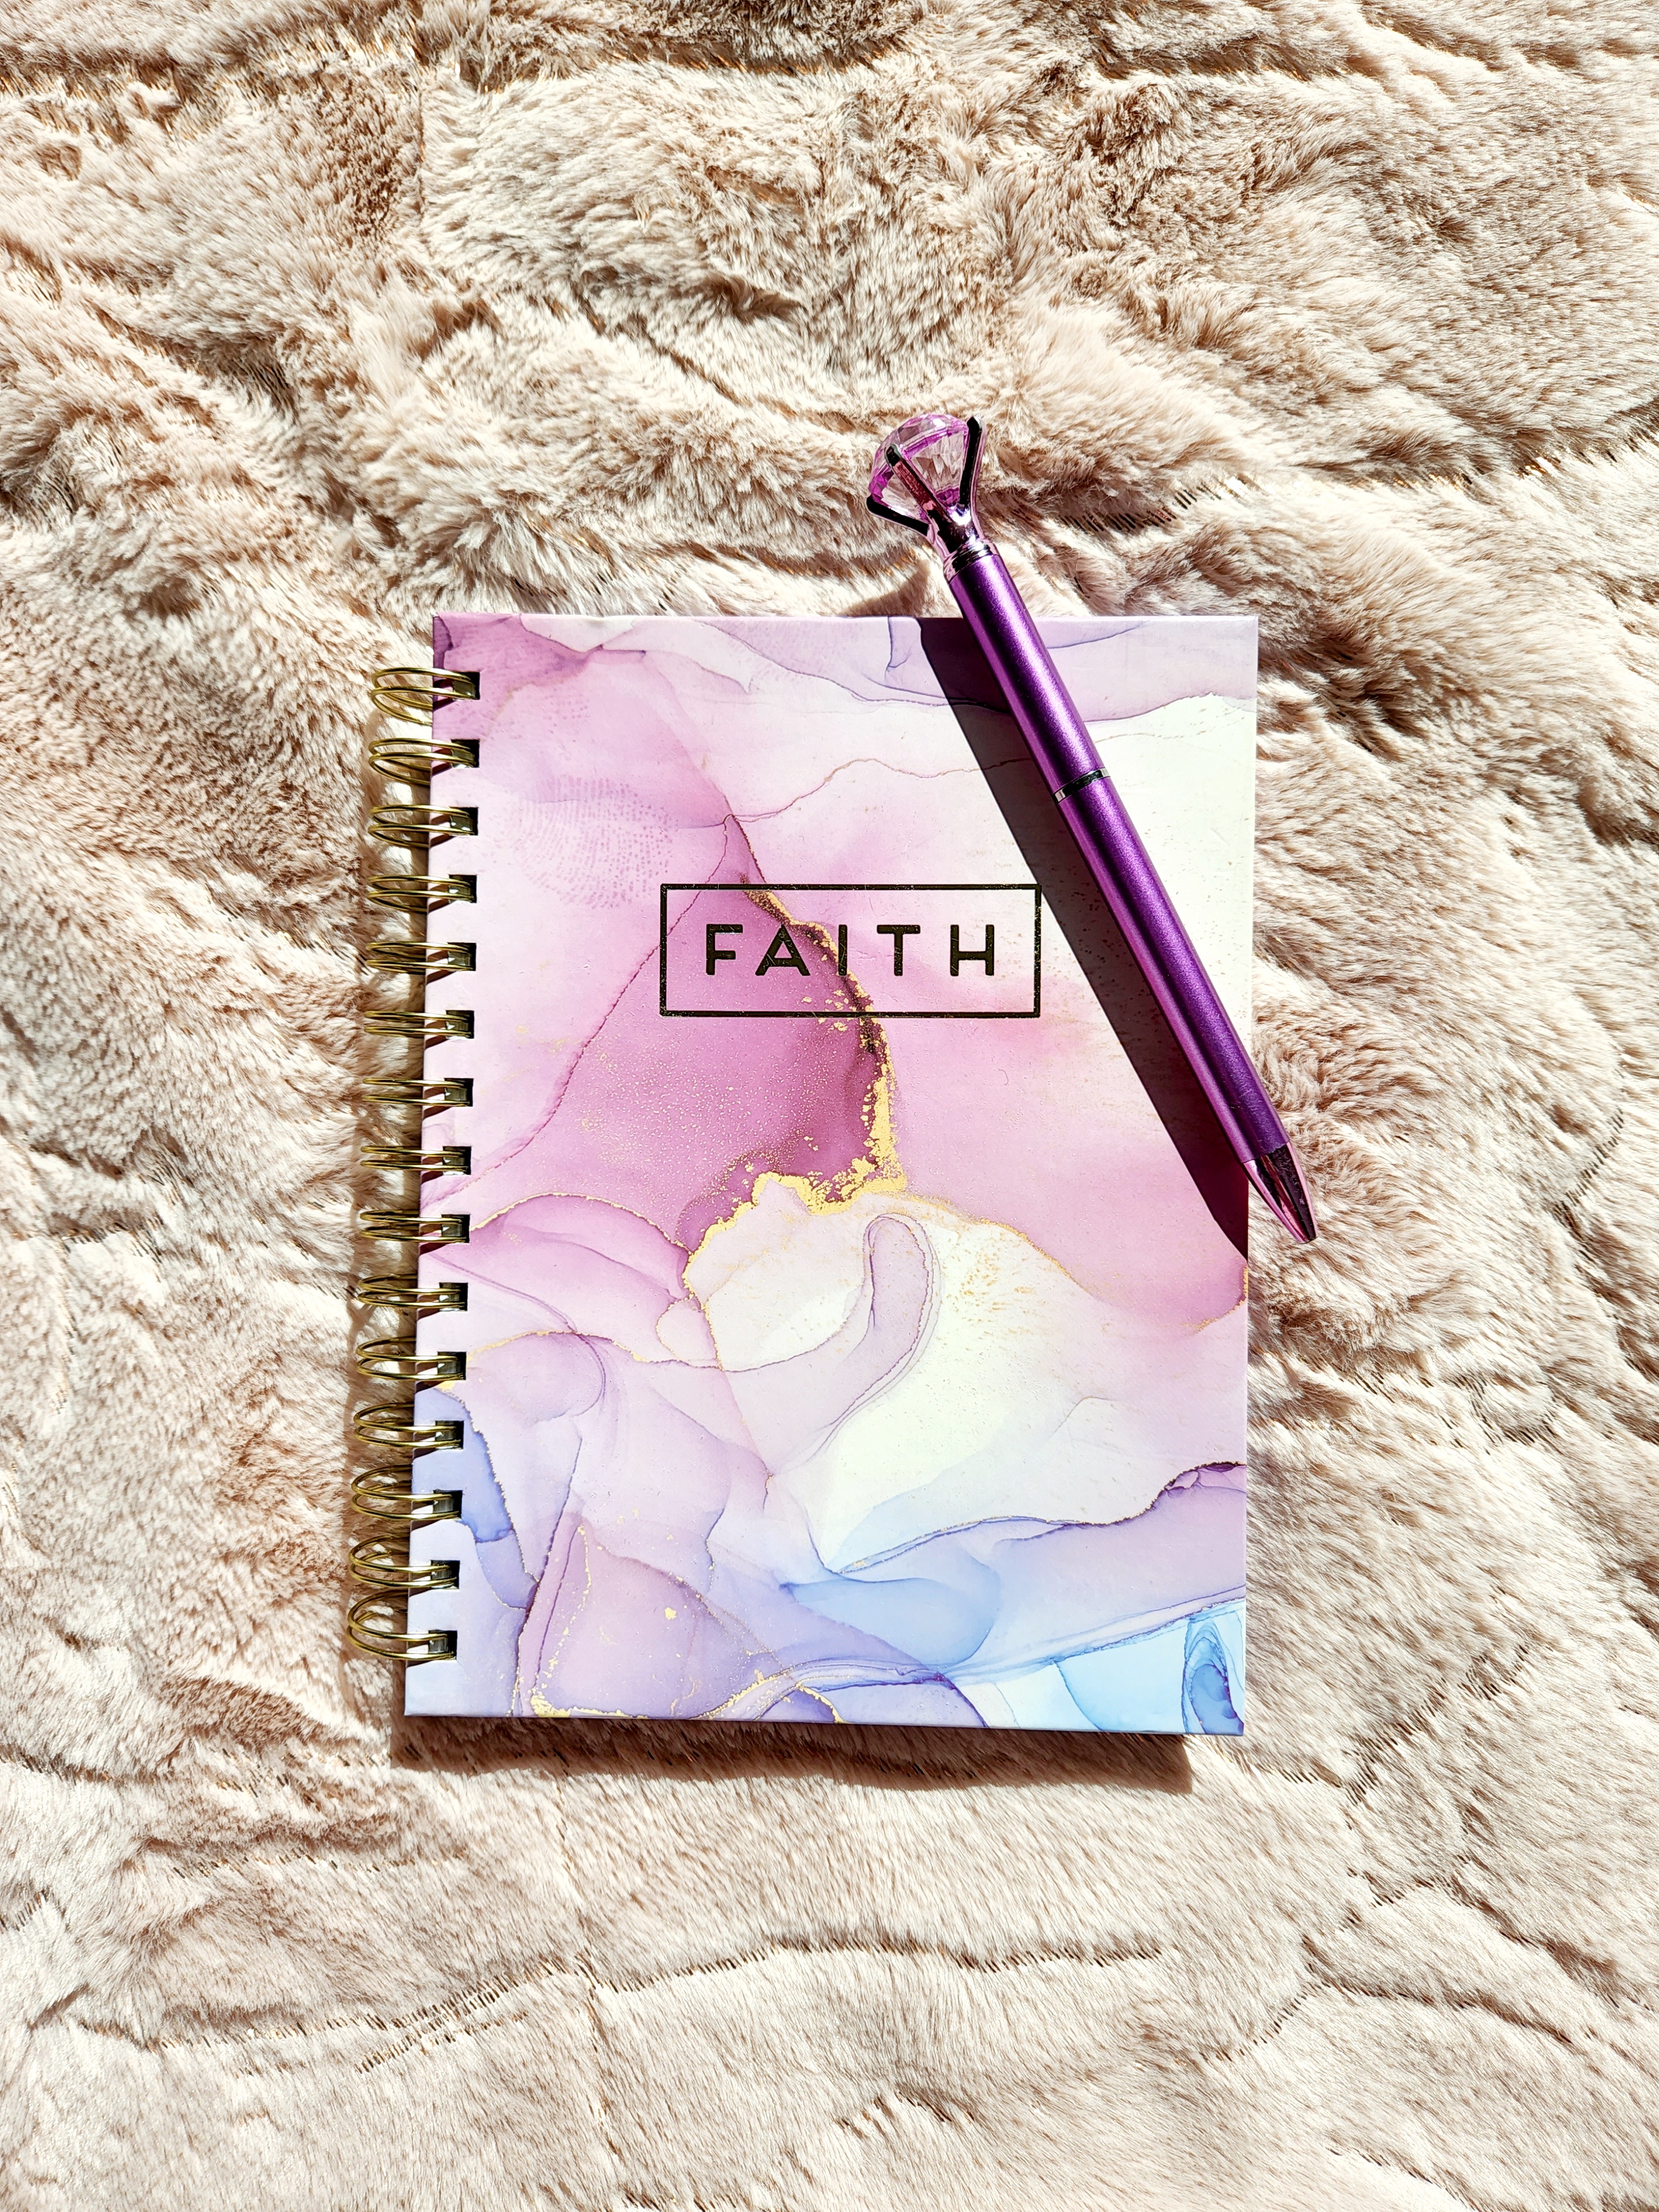 240-faith-notebook.jpg